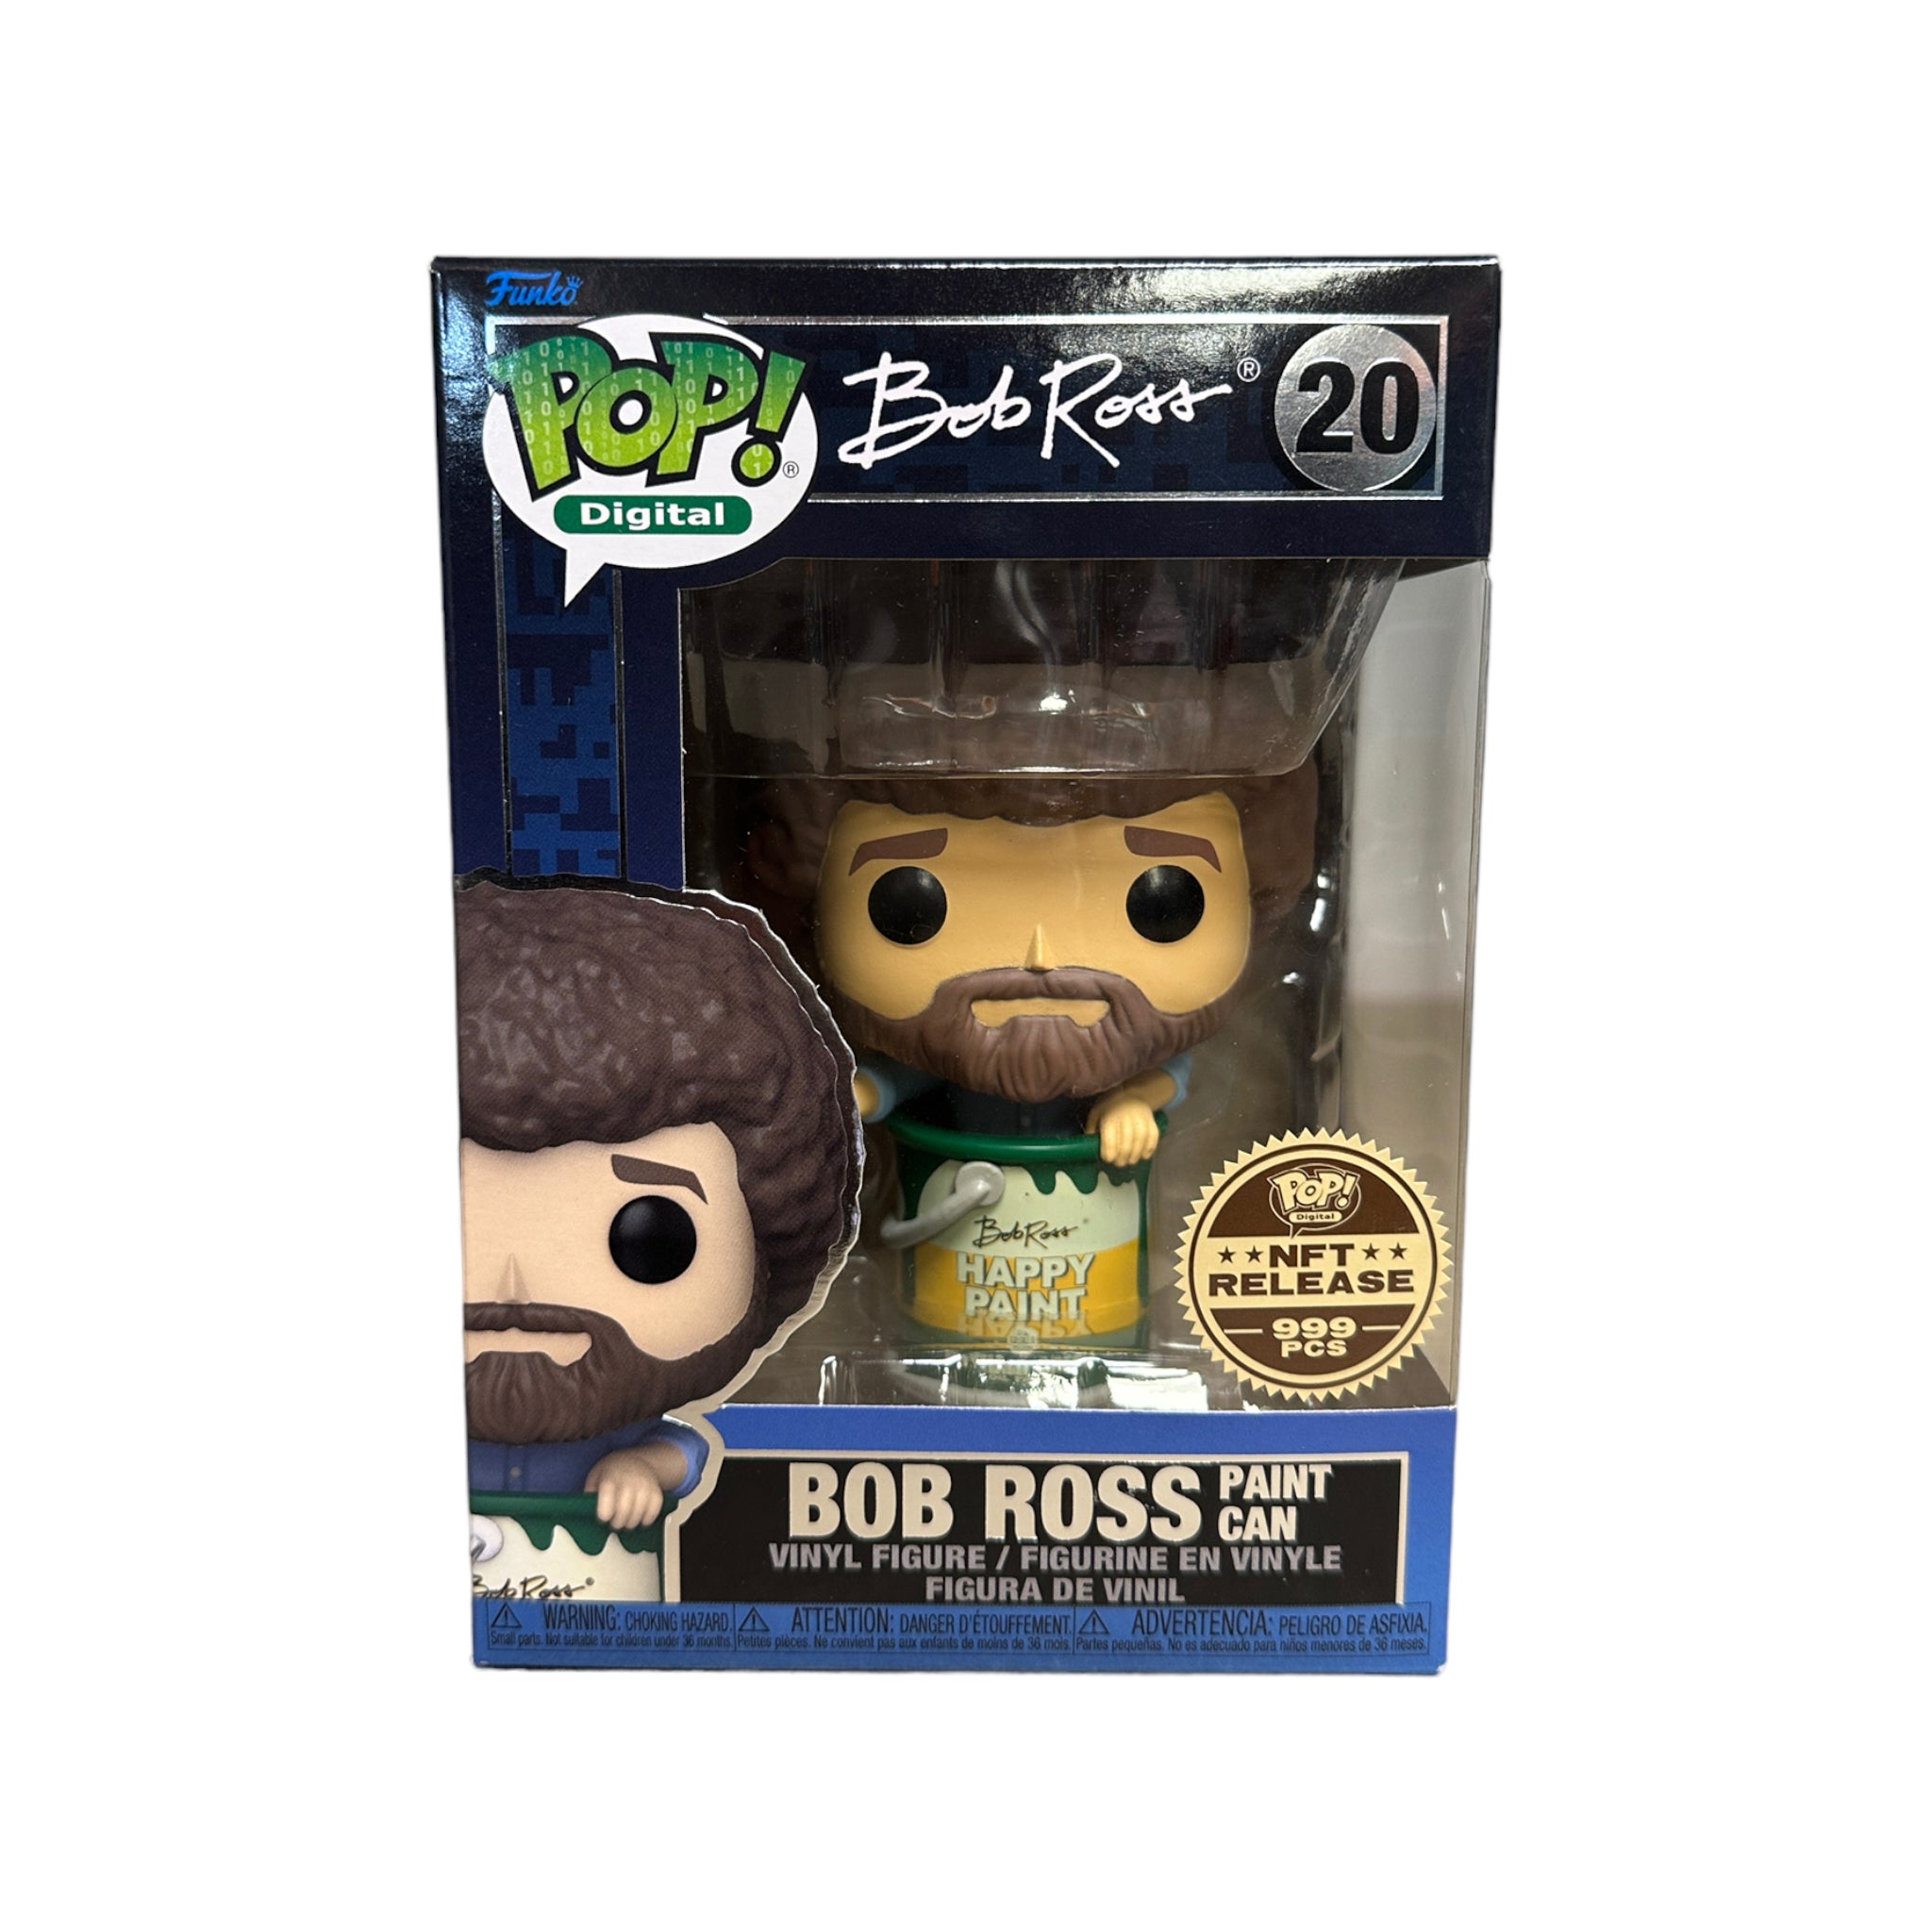 Bob Ross Paint Can #20 Funko Pop! - Bob Ross - NFT Release Exclusive LE999 Pcs - Condition 9/10